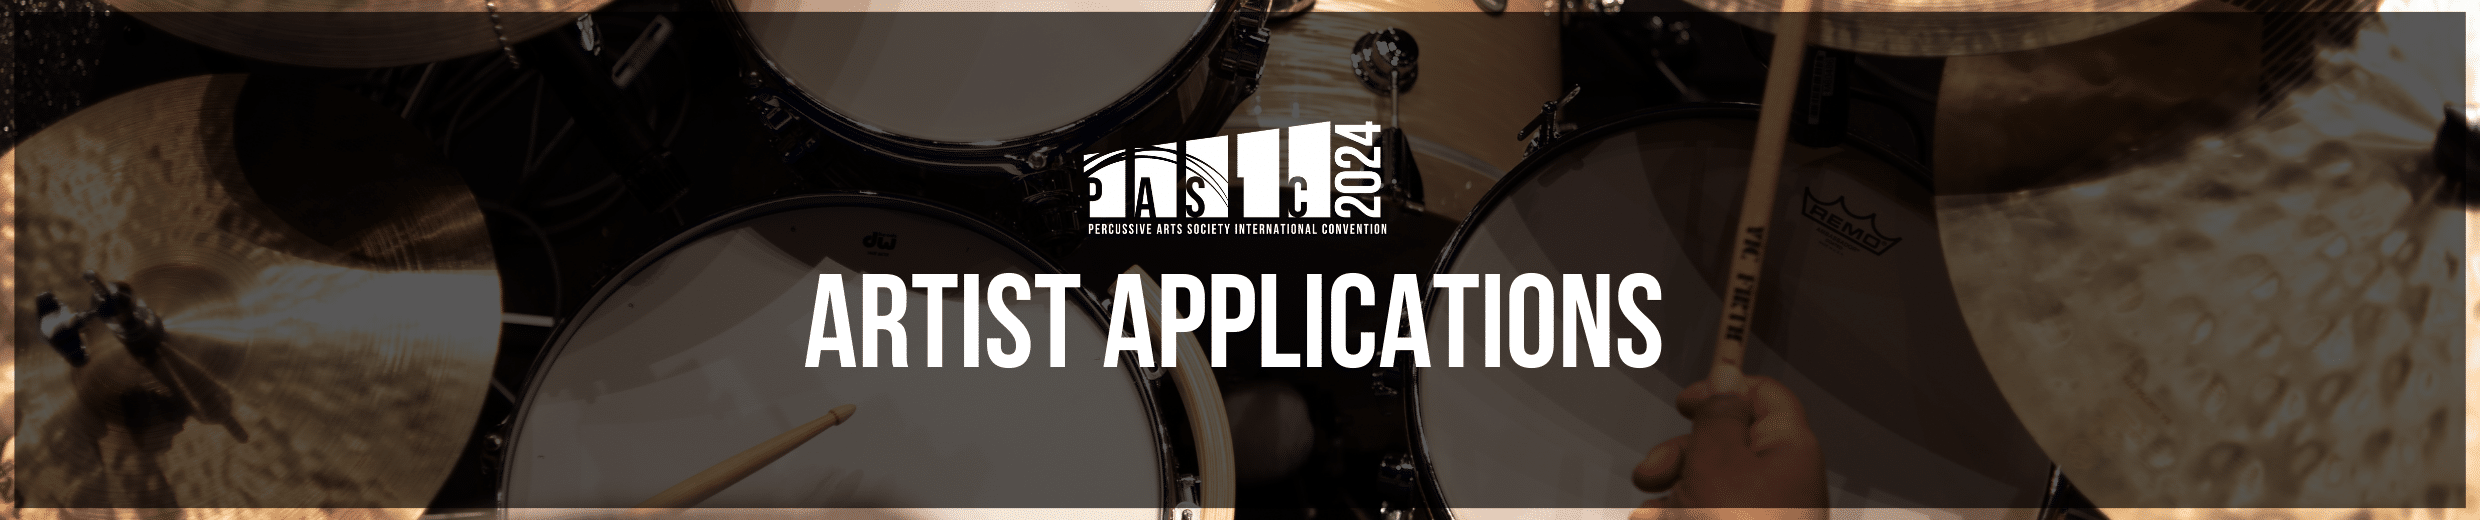 artist applications header